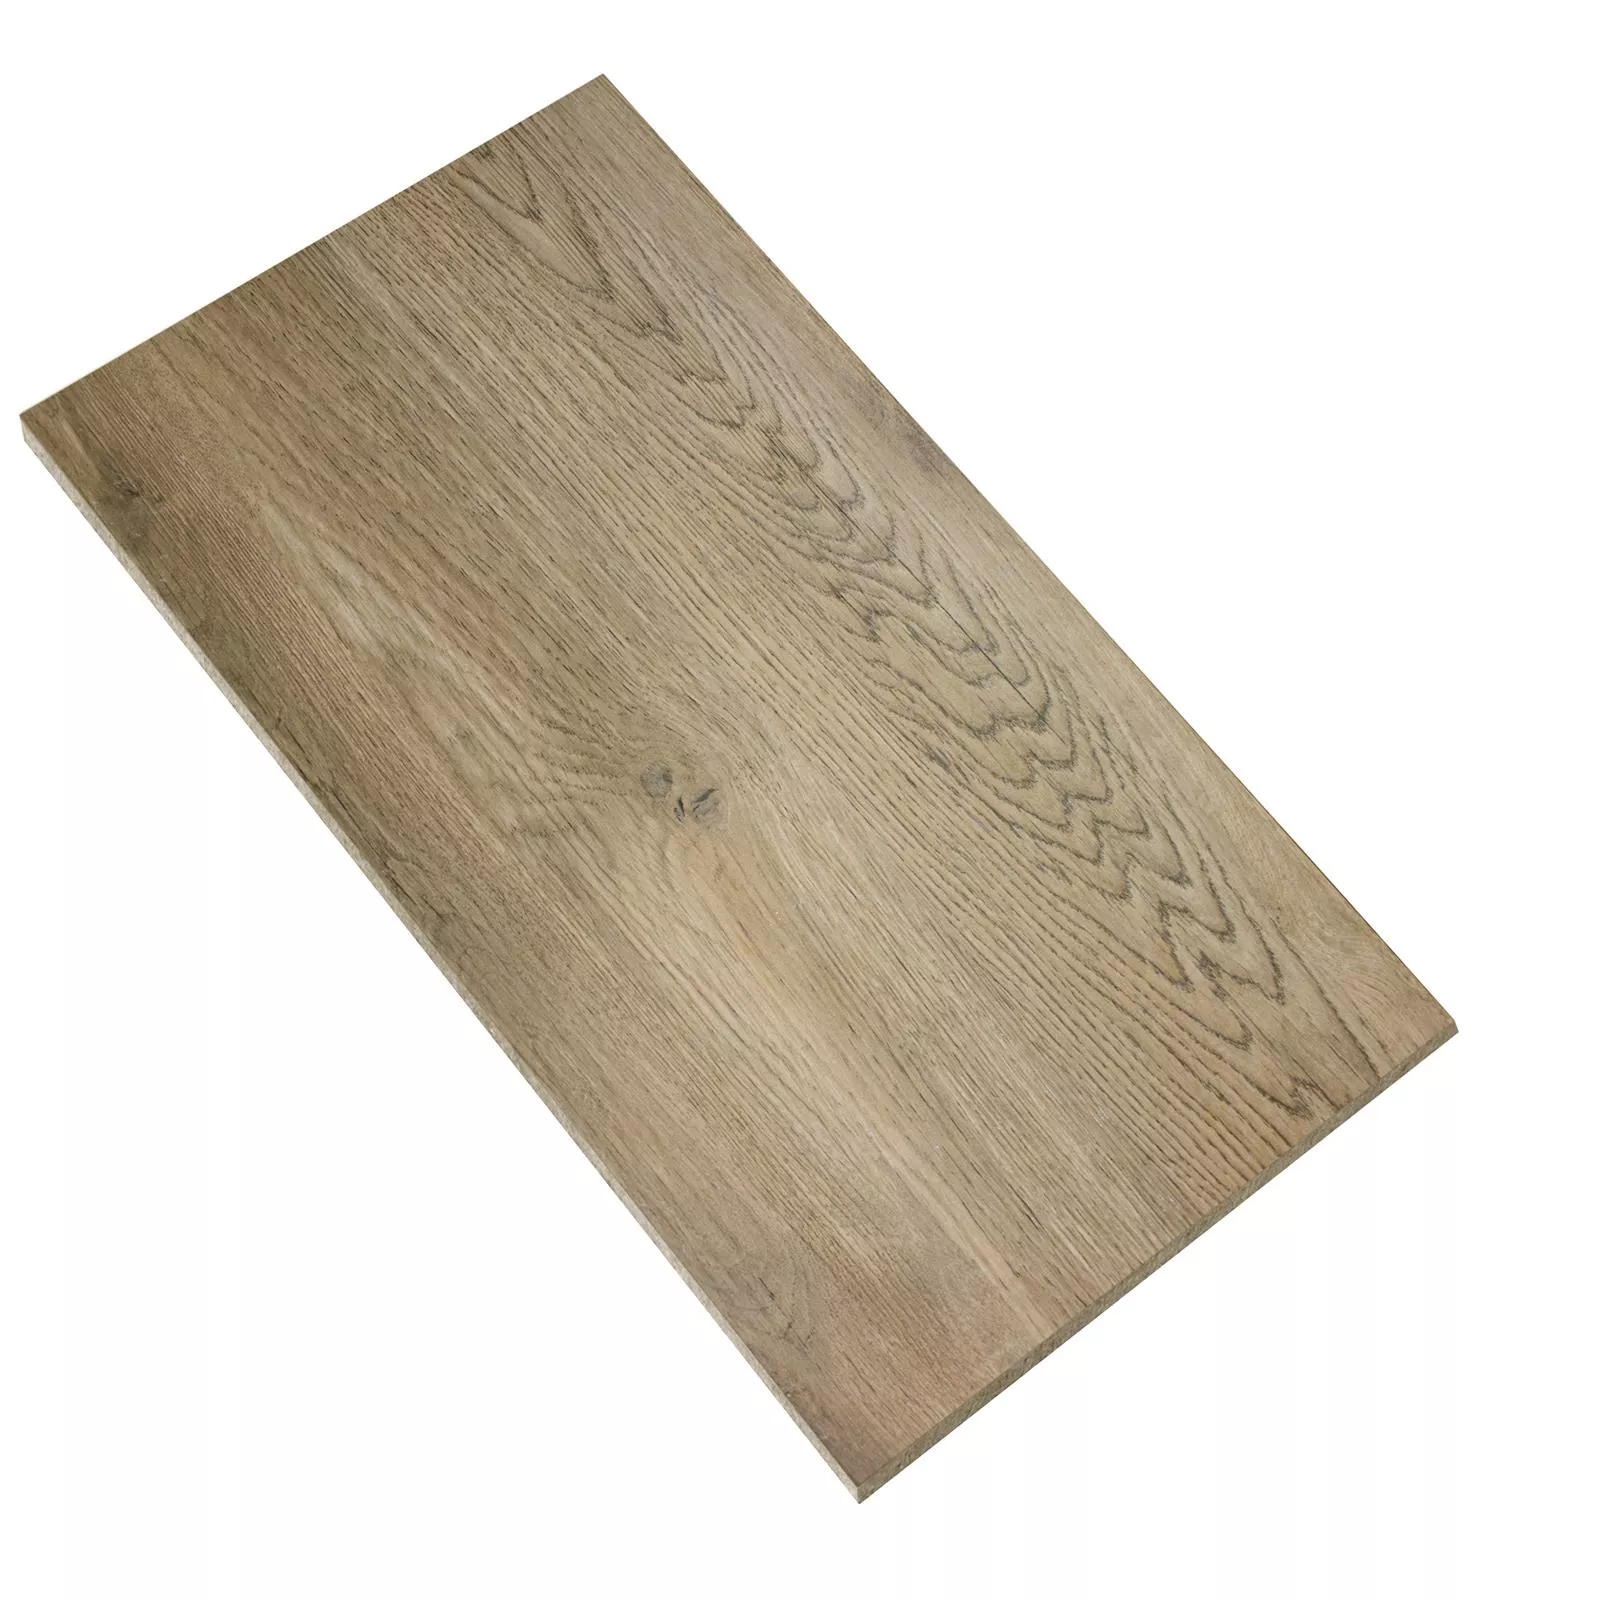 Próbka Płytki Podłogowe Wygląd Drewna Alexandria Ciemnobeżowy 30x60cm